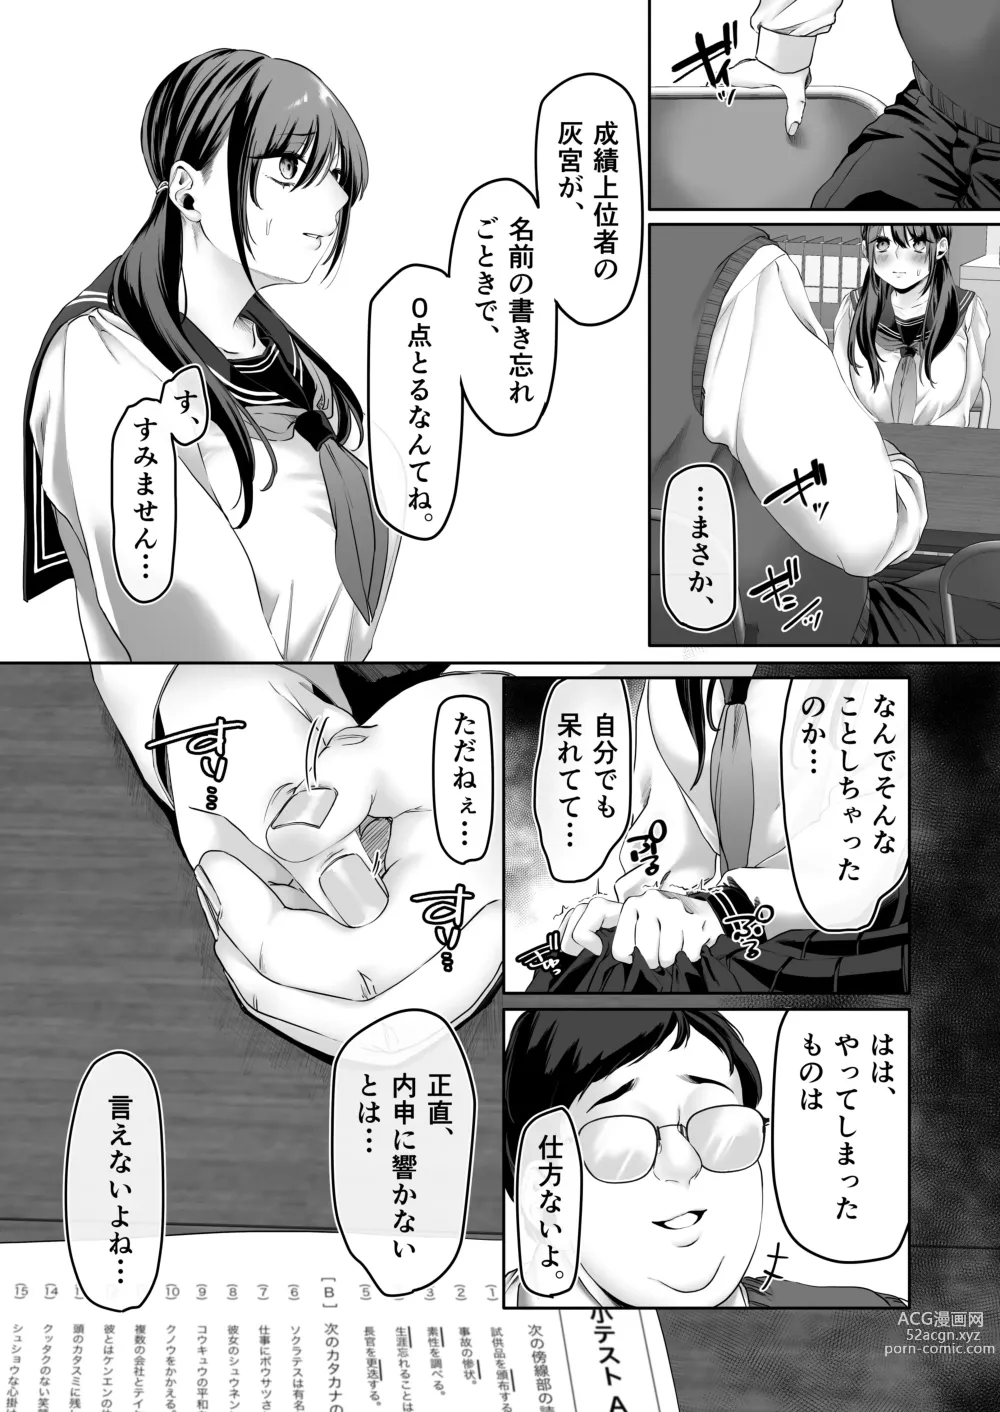 Page 7 of doujinshi 0-ten no Cinderella